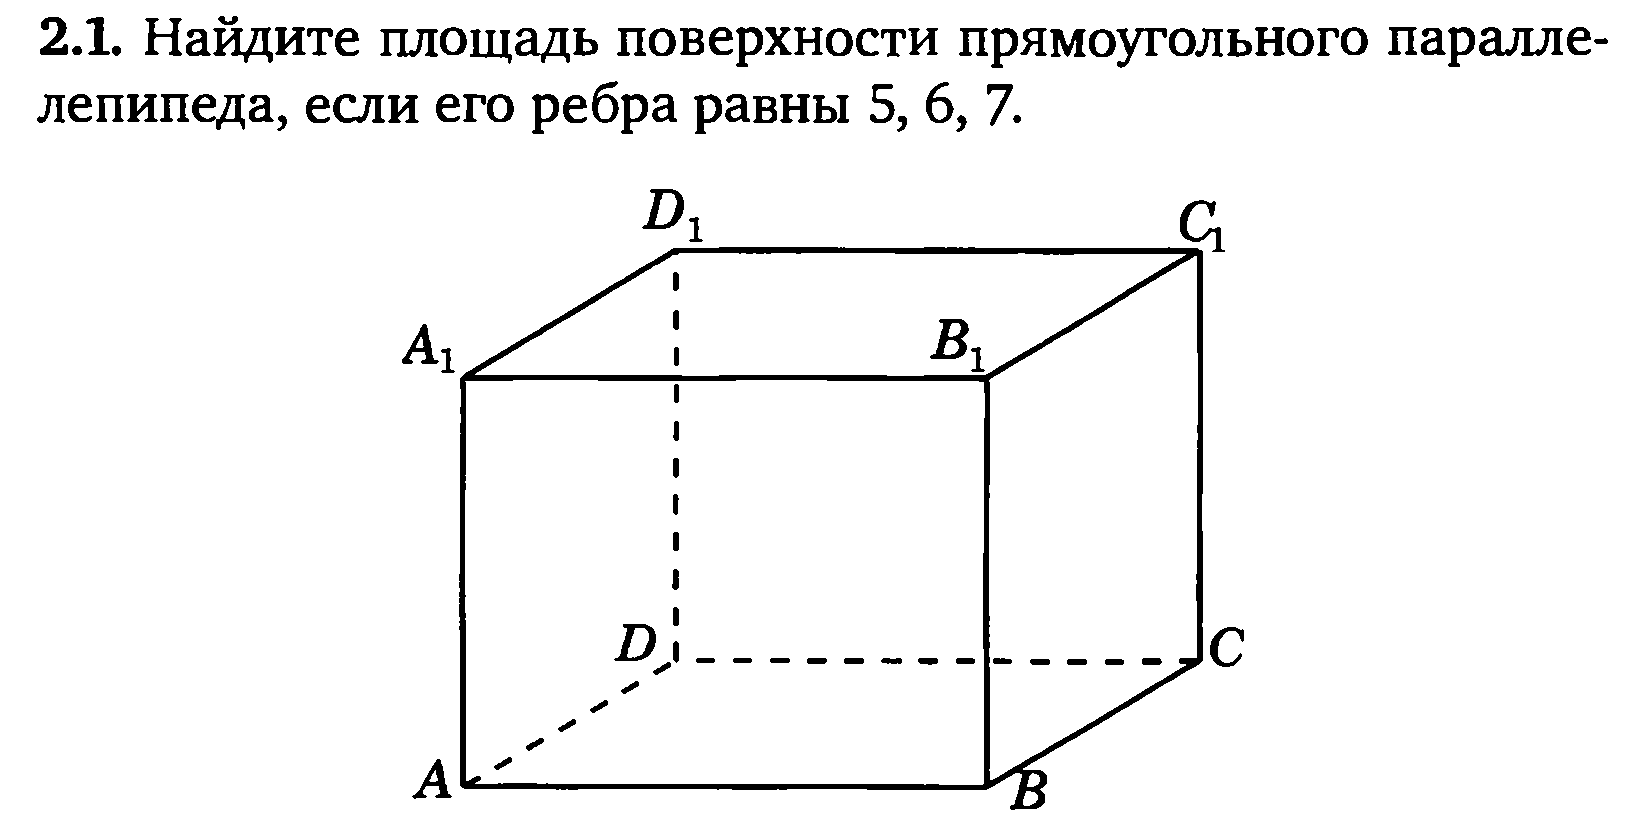 Найдите диагональ куба с ребром 2. Площадь параллелепипеда. Геометрические задачи ЕГЭ. Диагональ грани Куба равна. Чертеж прямоугольного параллелепипеда вектор.